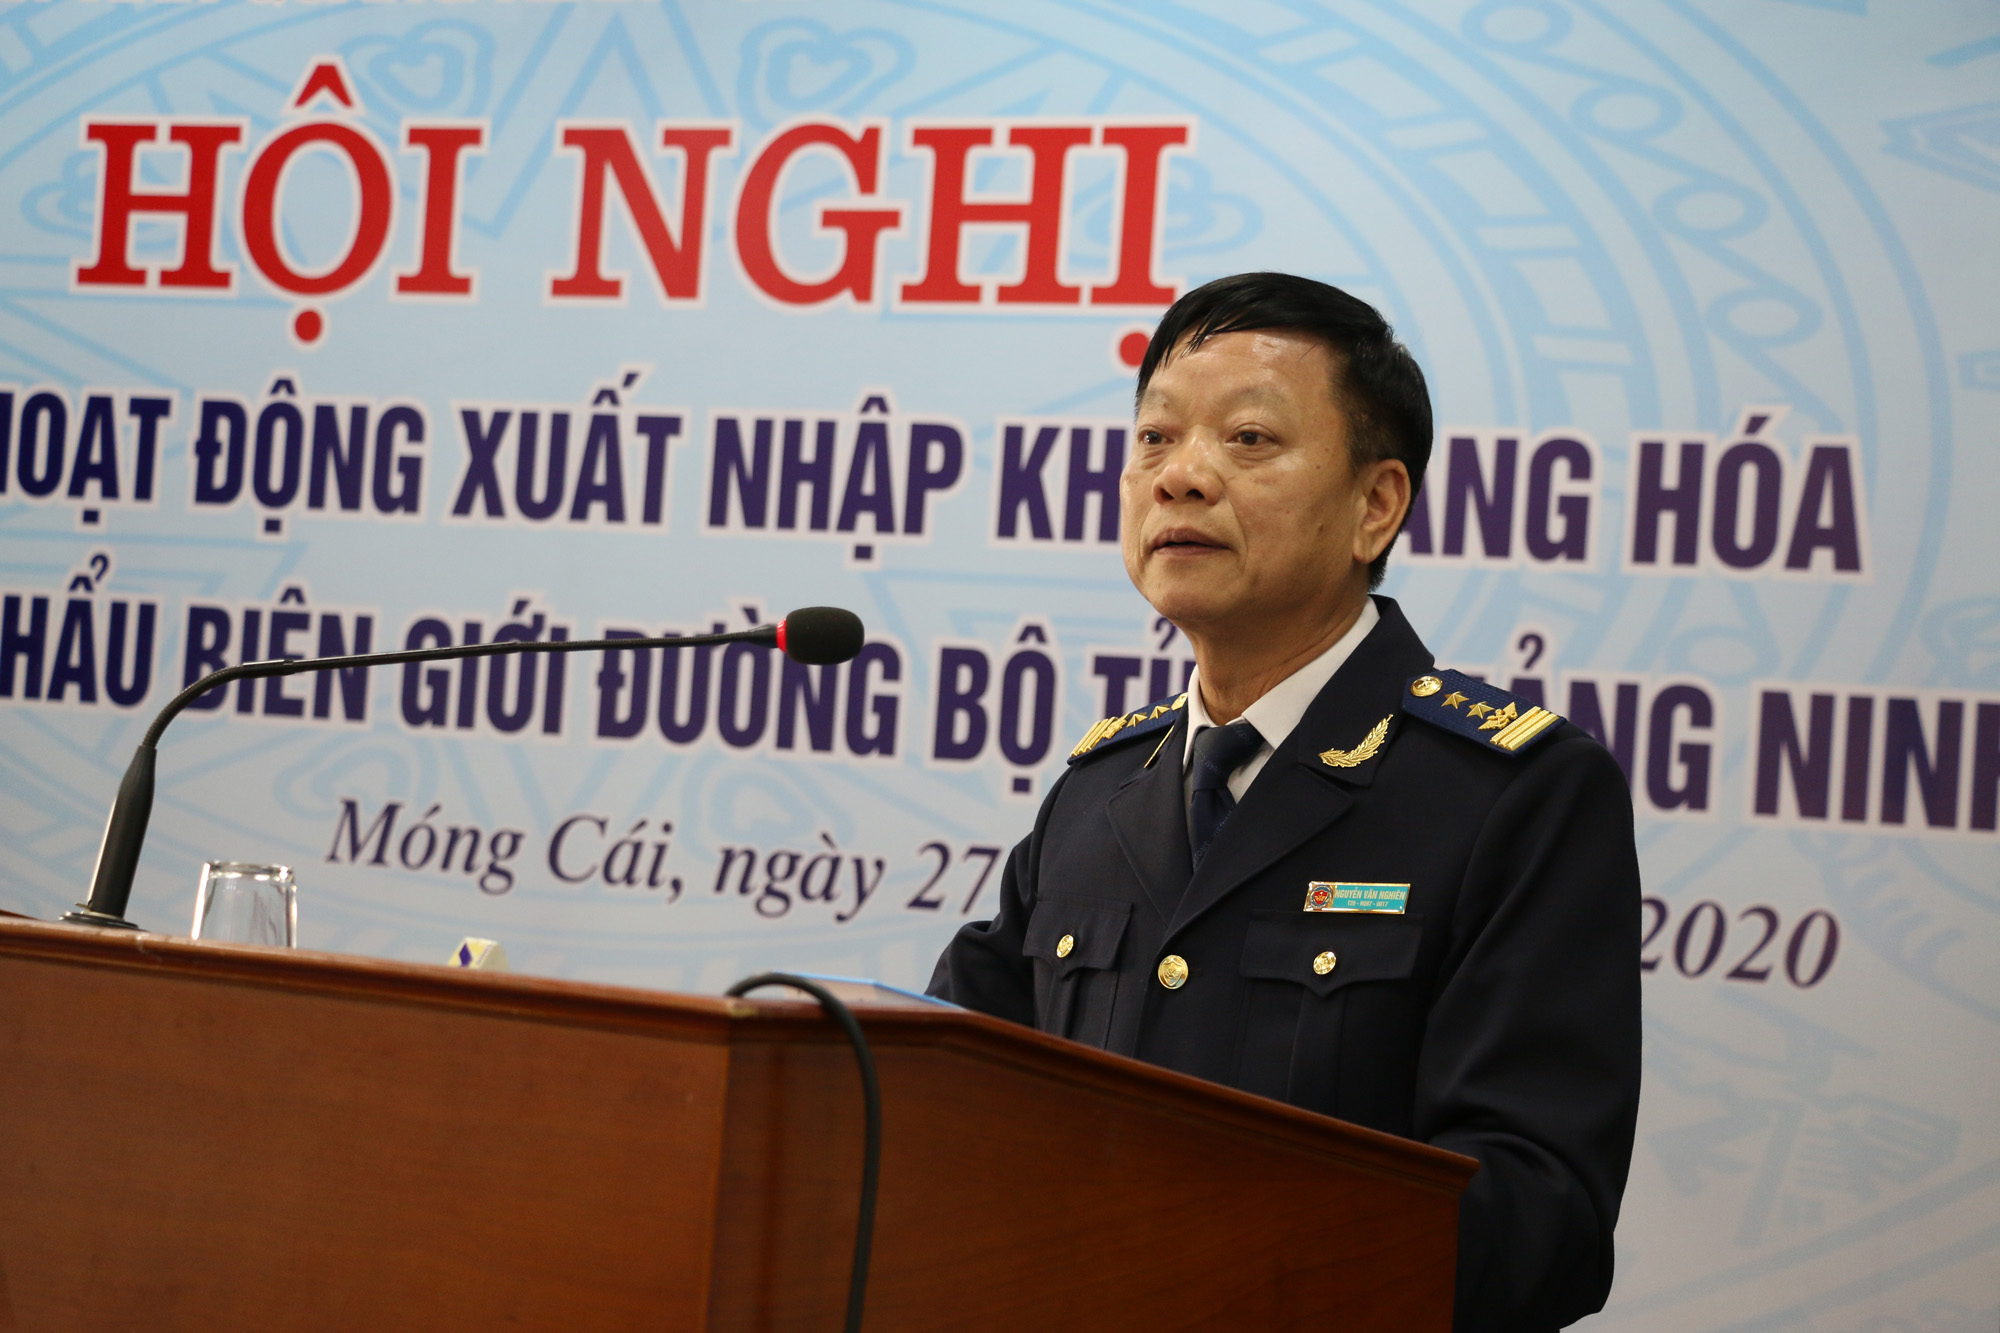 Đồng chí Nguyễn Văn Nghiên, Cục trưởng Cục Hải quan Quảng Ninh phát biểu về những yêu cầu đối với doanh nghiệp XNK và cam kết hỗ trợ, đồng hành của ngành Hải quan đối với doanh nghiệp trong hoạt động XNK.